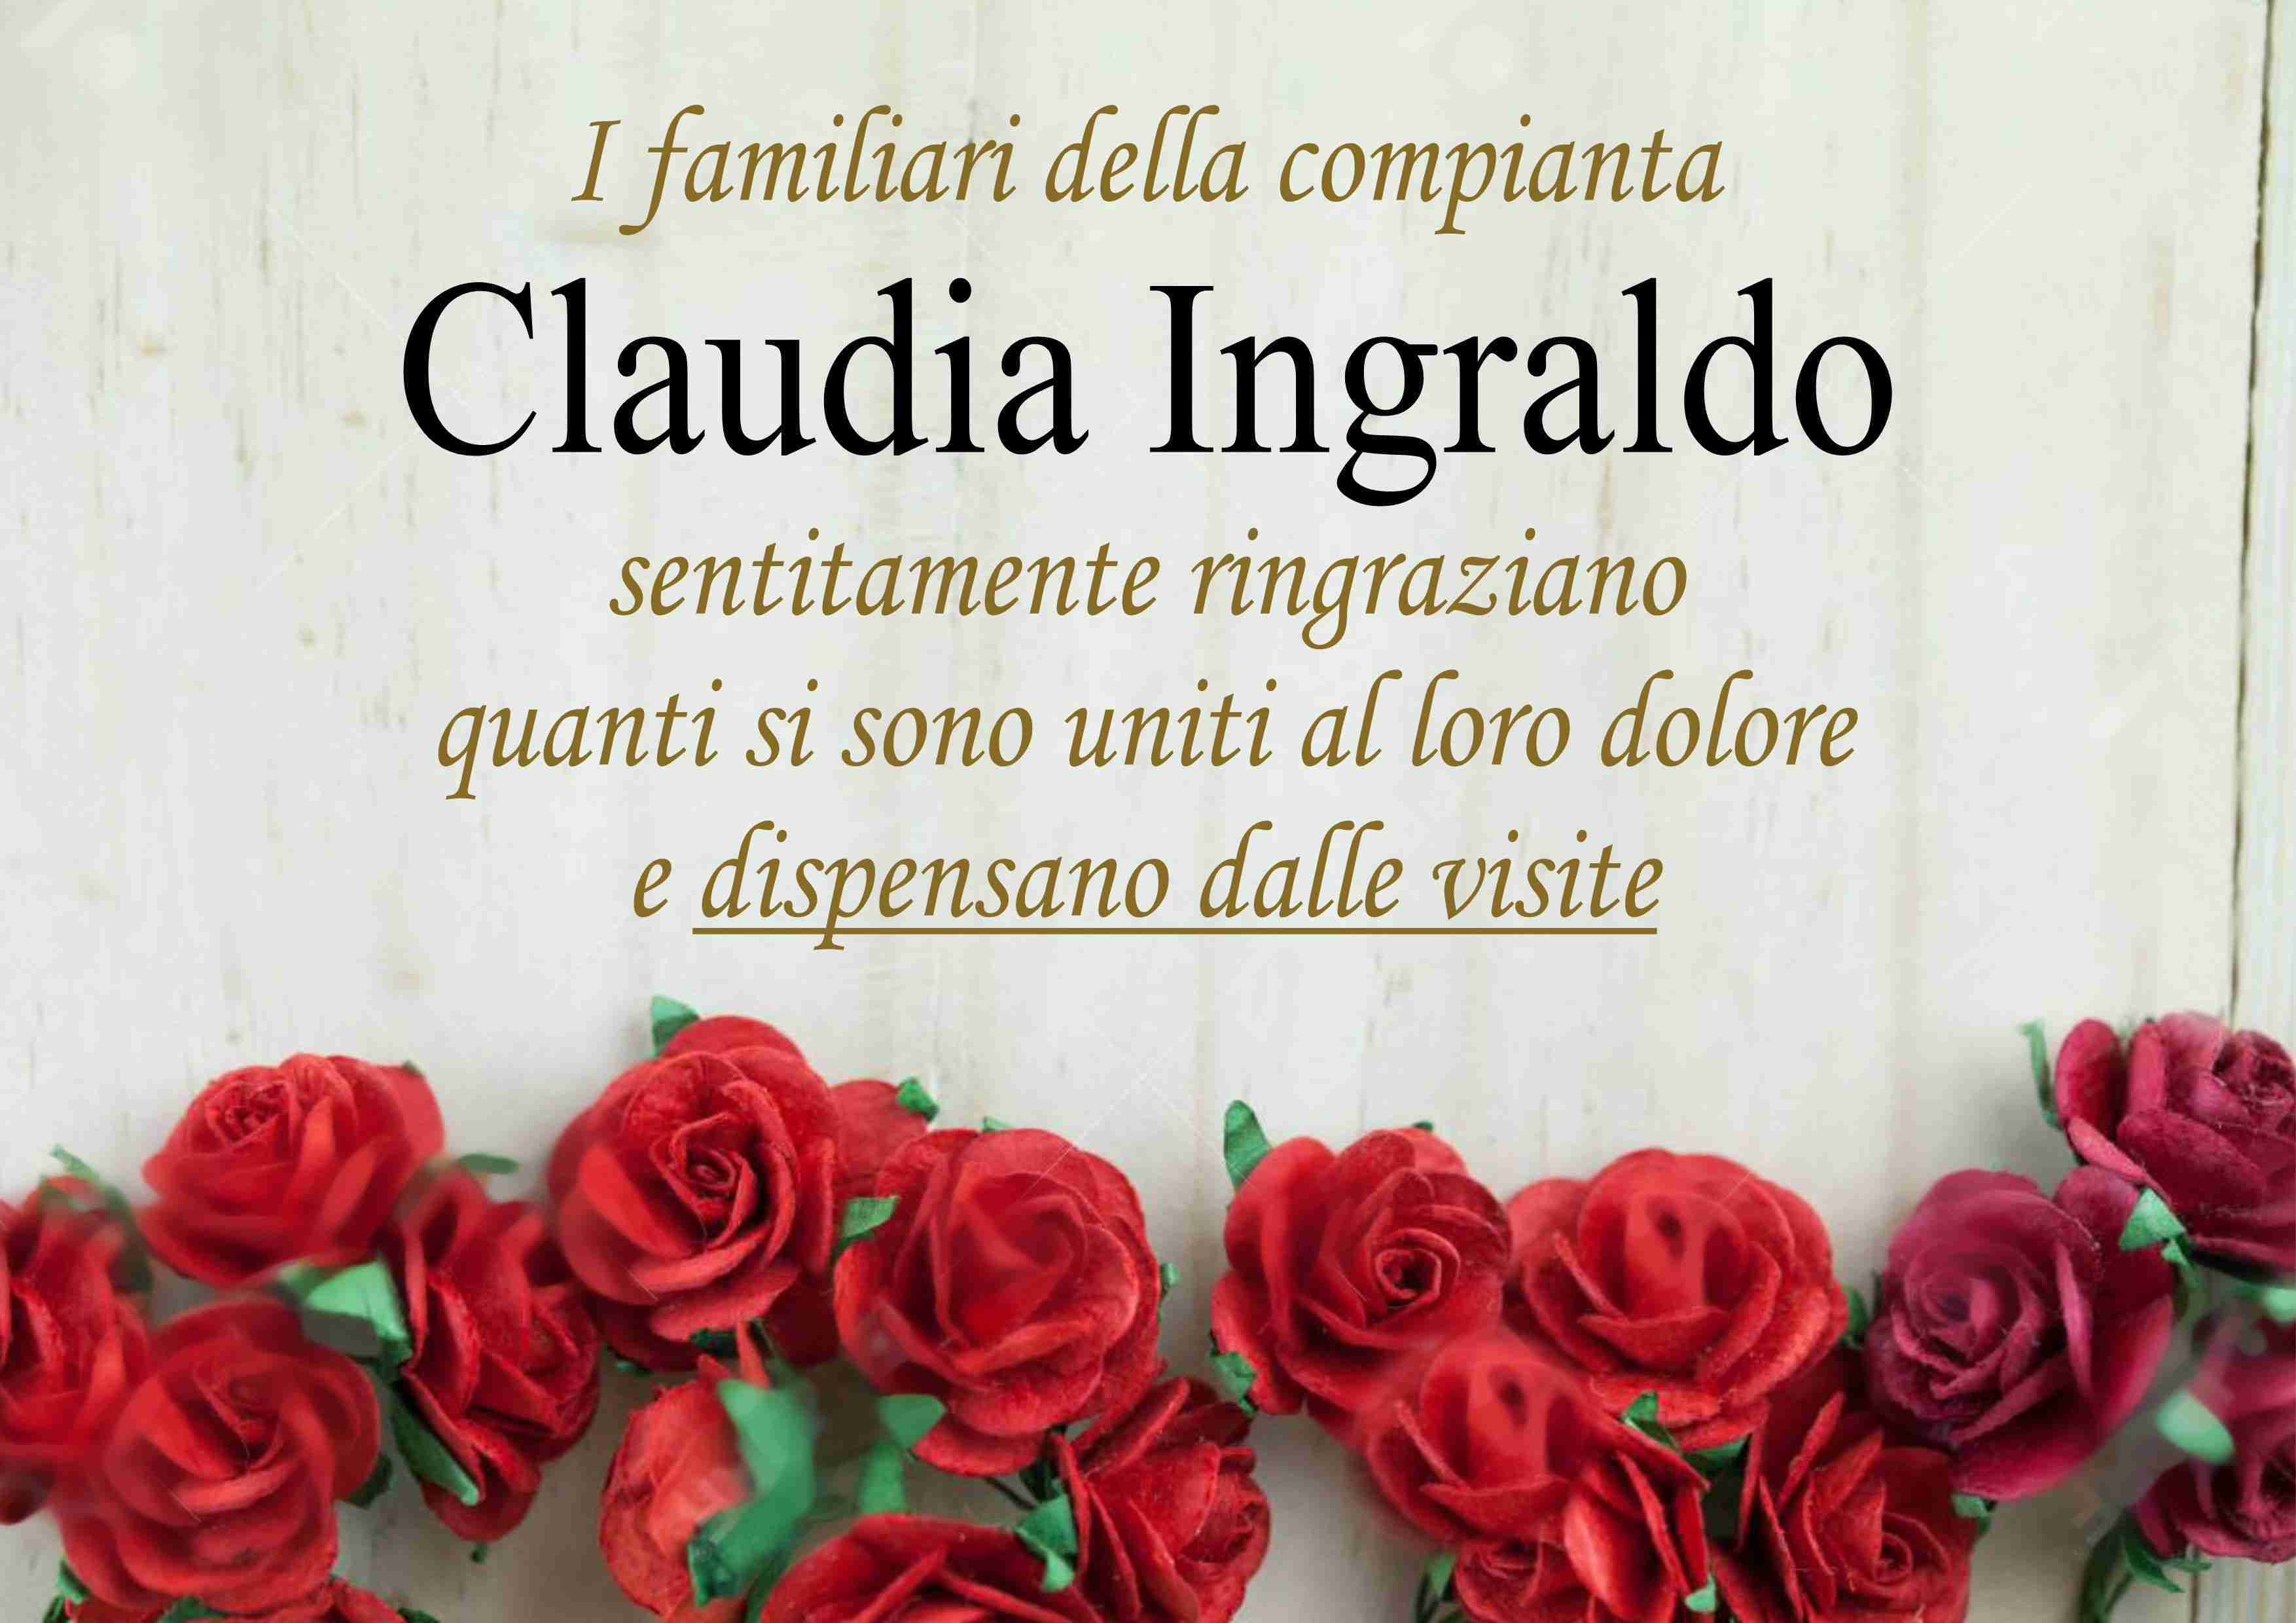 Claudia Ingraldo